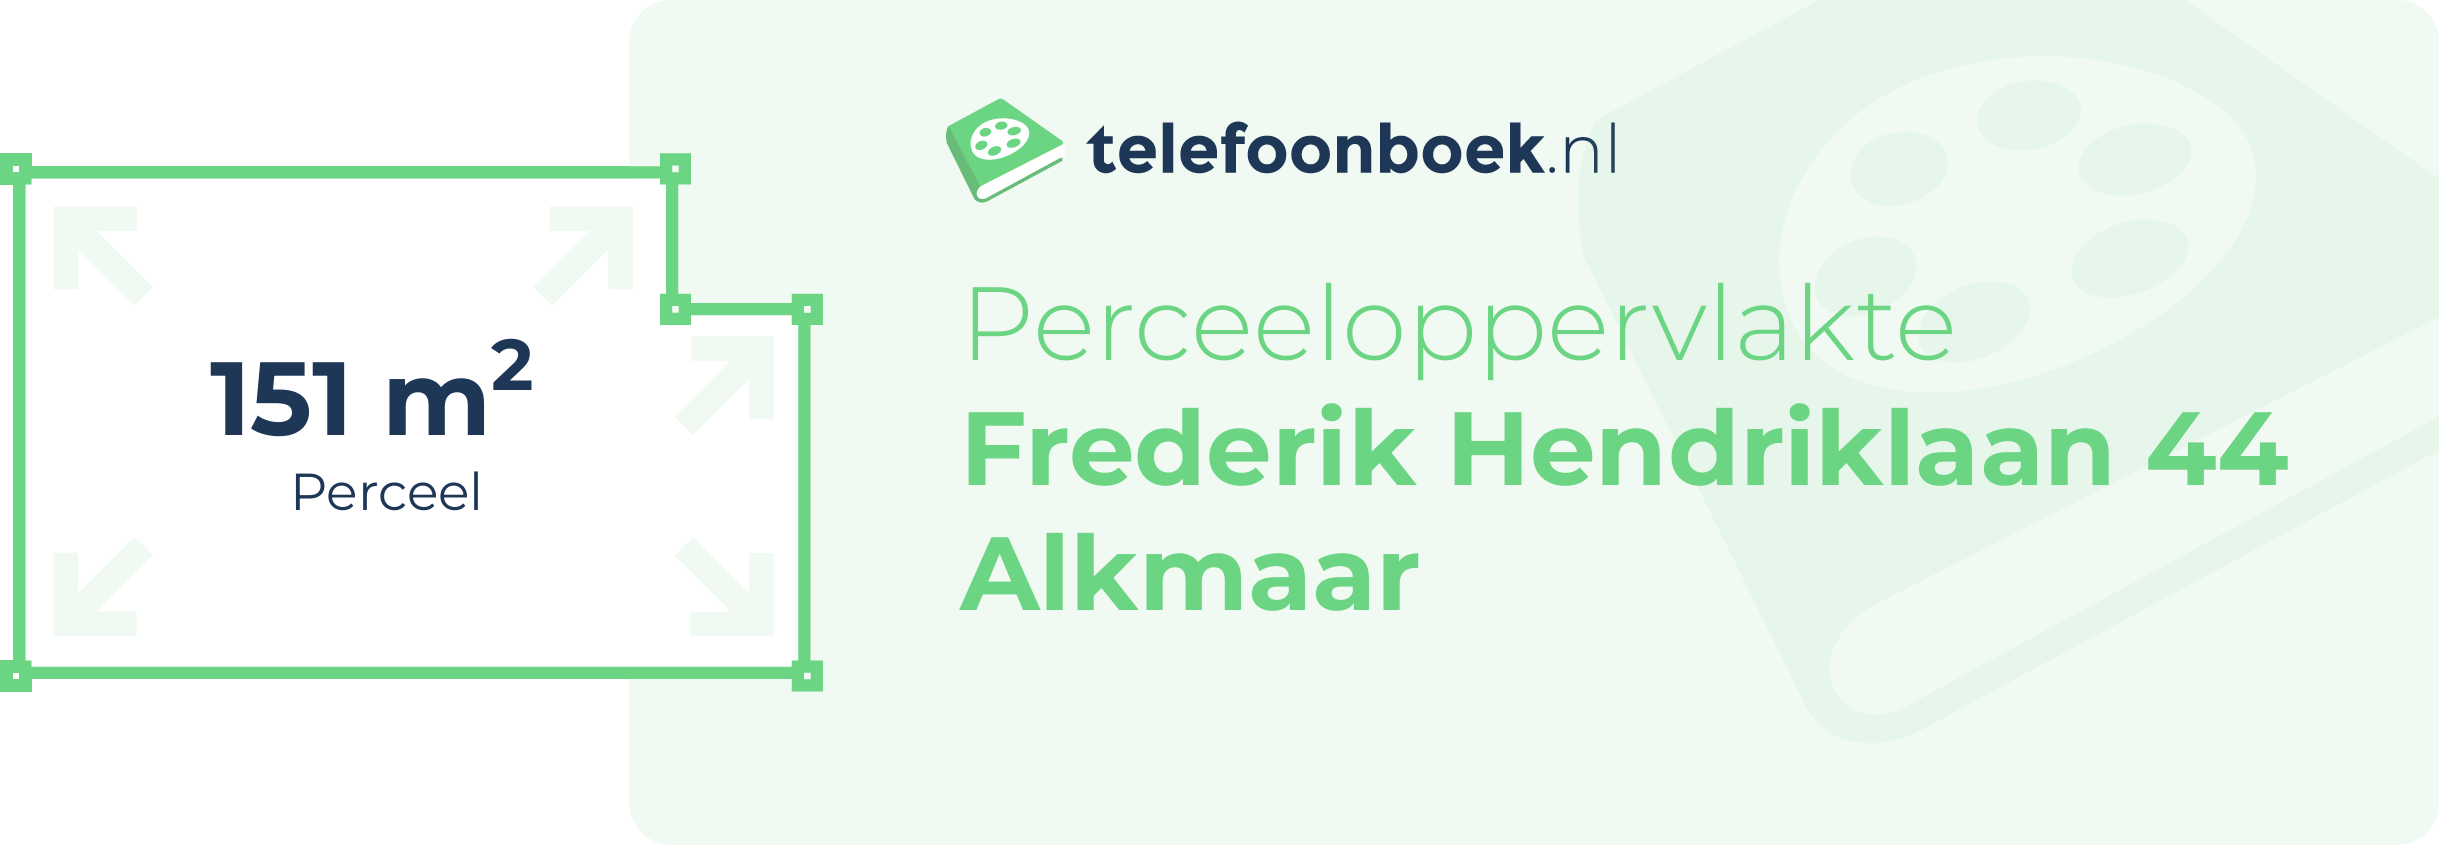 Perceeloppervlakte Frederik Hendriklaan 44 Alkmaar